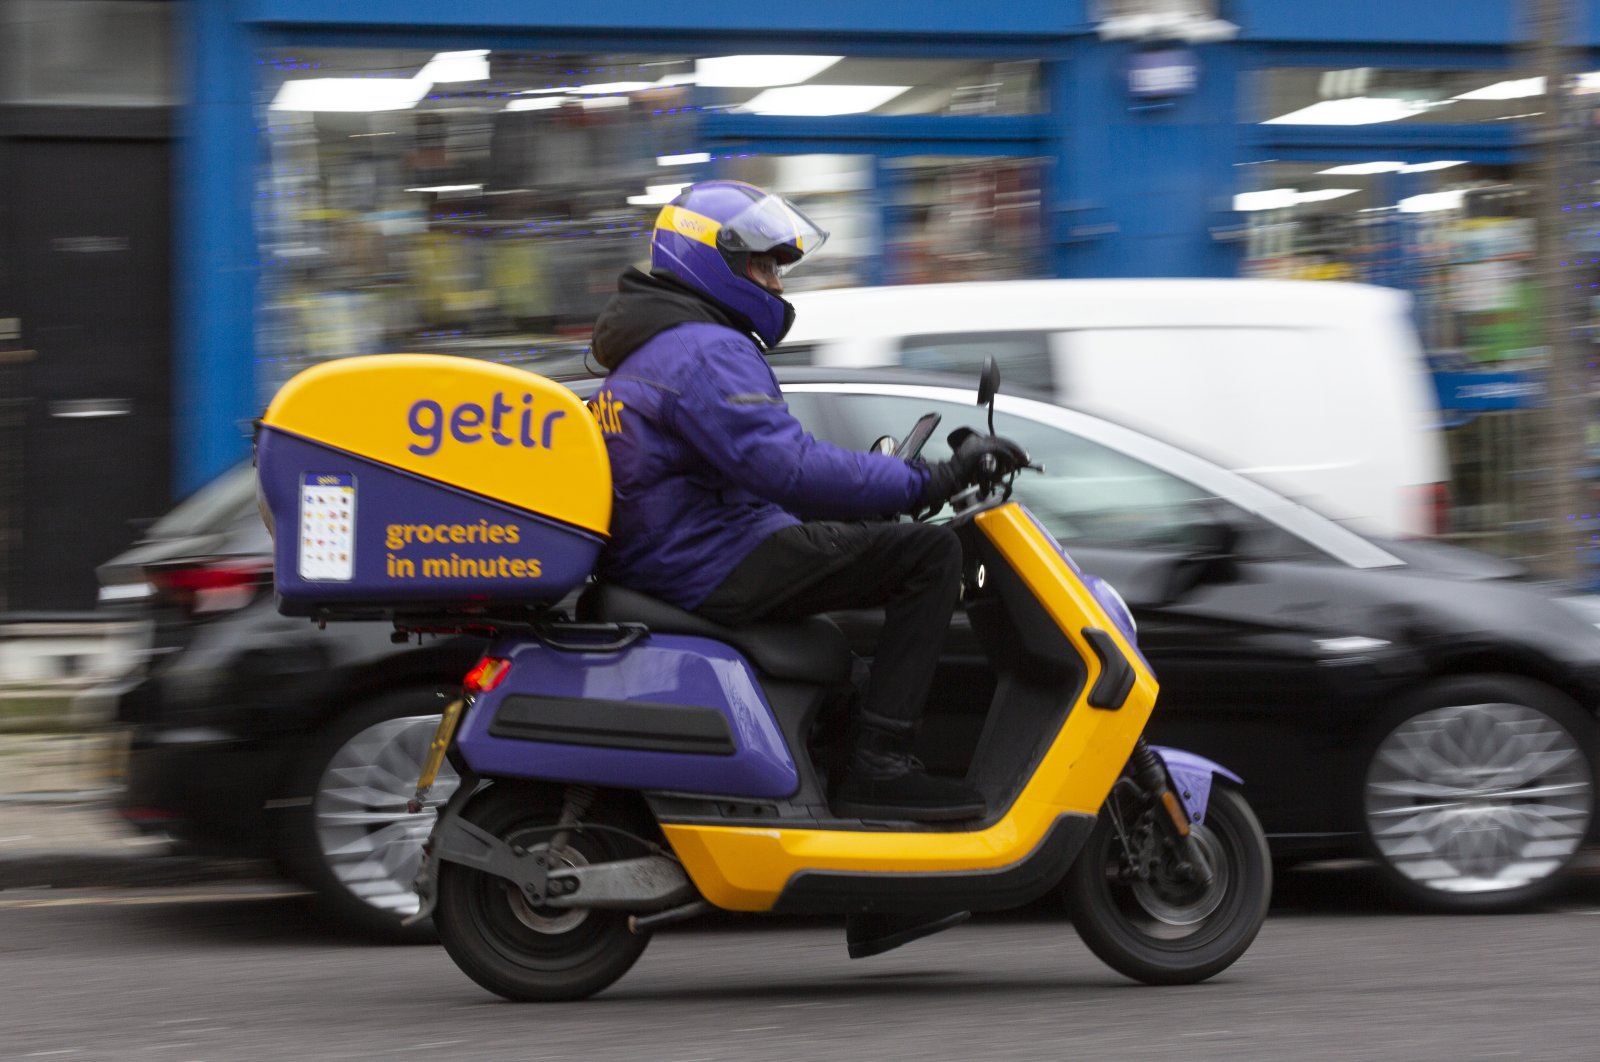 A Getir courier is seen on a street in London, U.K., Dec. 30, 2021. (AA Photo)